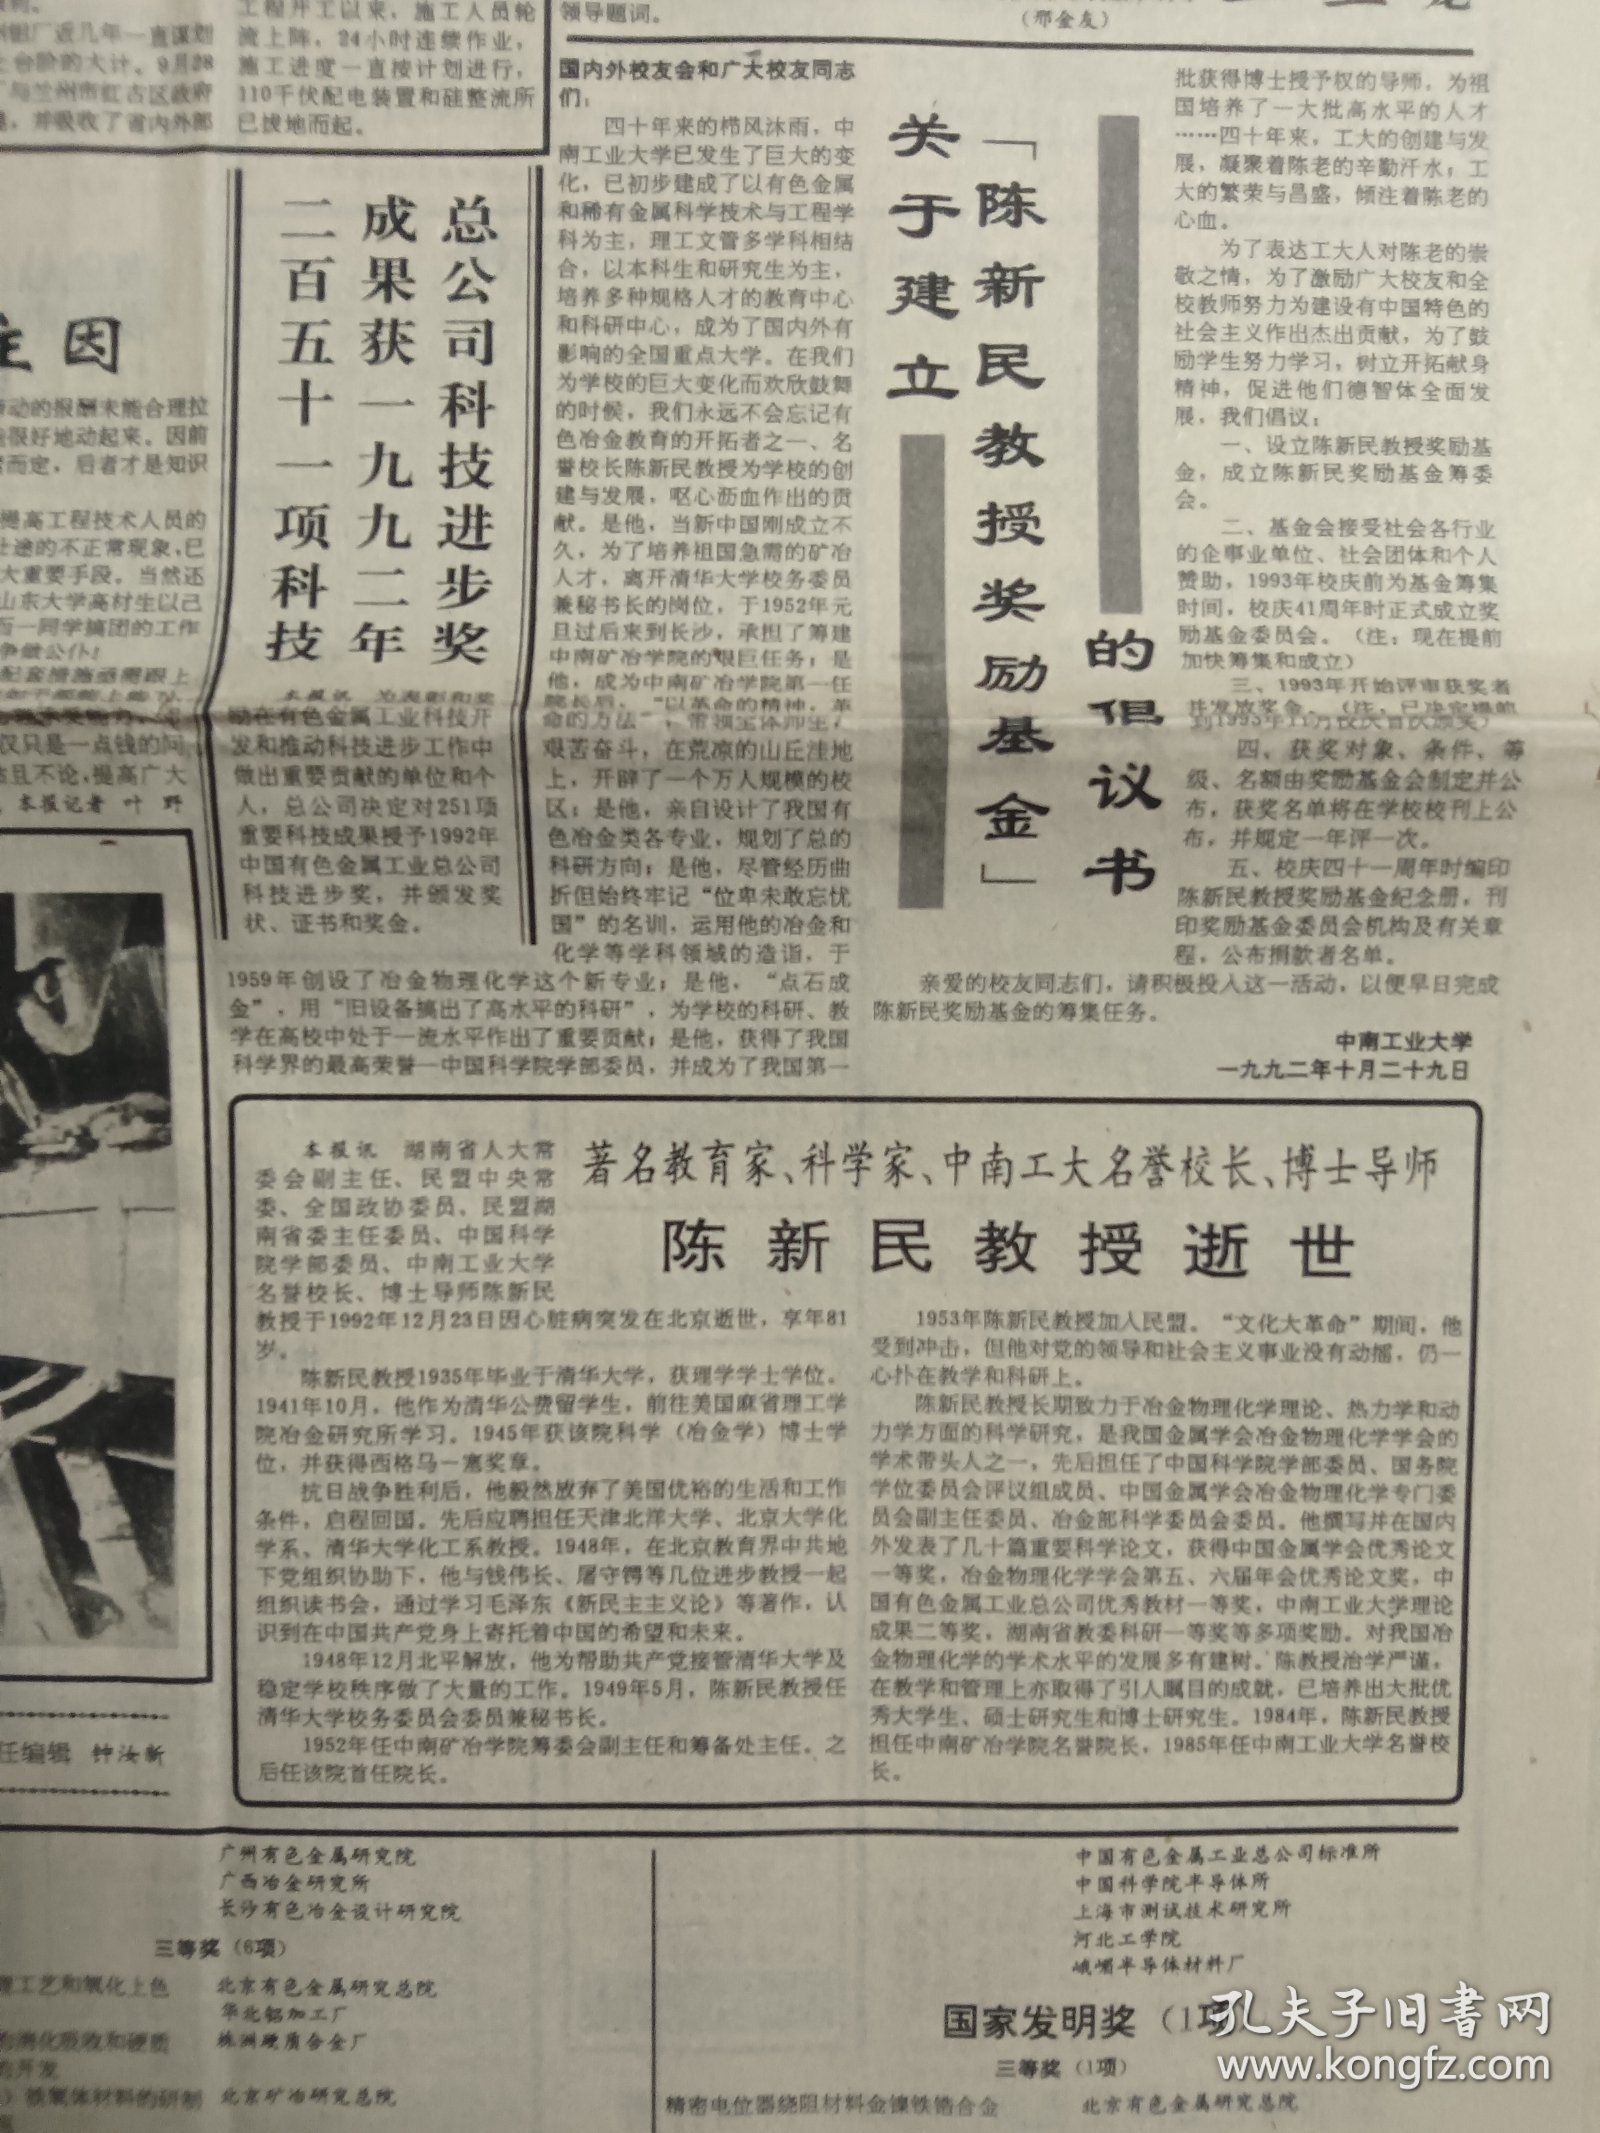 中国有色金属报 1993年1月14日 著名教育家 科学家 中南工大名誉校长 博士导师 陈新民教授逝世（10份之内只收一个邮费）